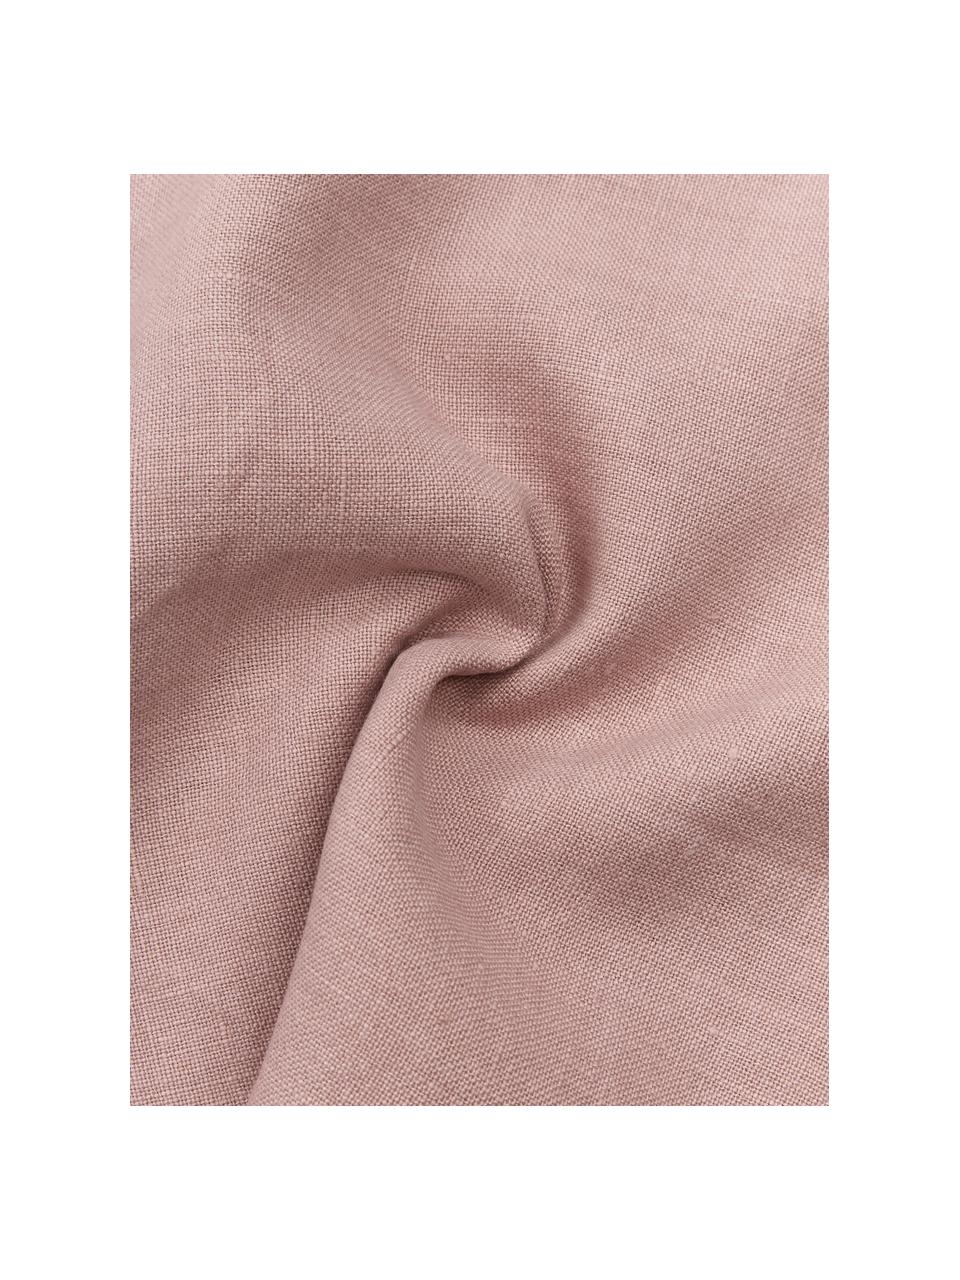 Federa in lino rosa cipria con orlo rialzato Luana, 100% lino, Rosa cipria, Larg. 30 x Lung. 50 cm